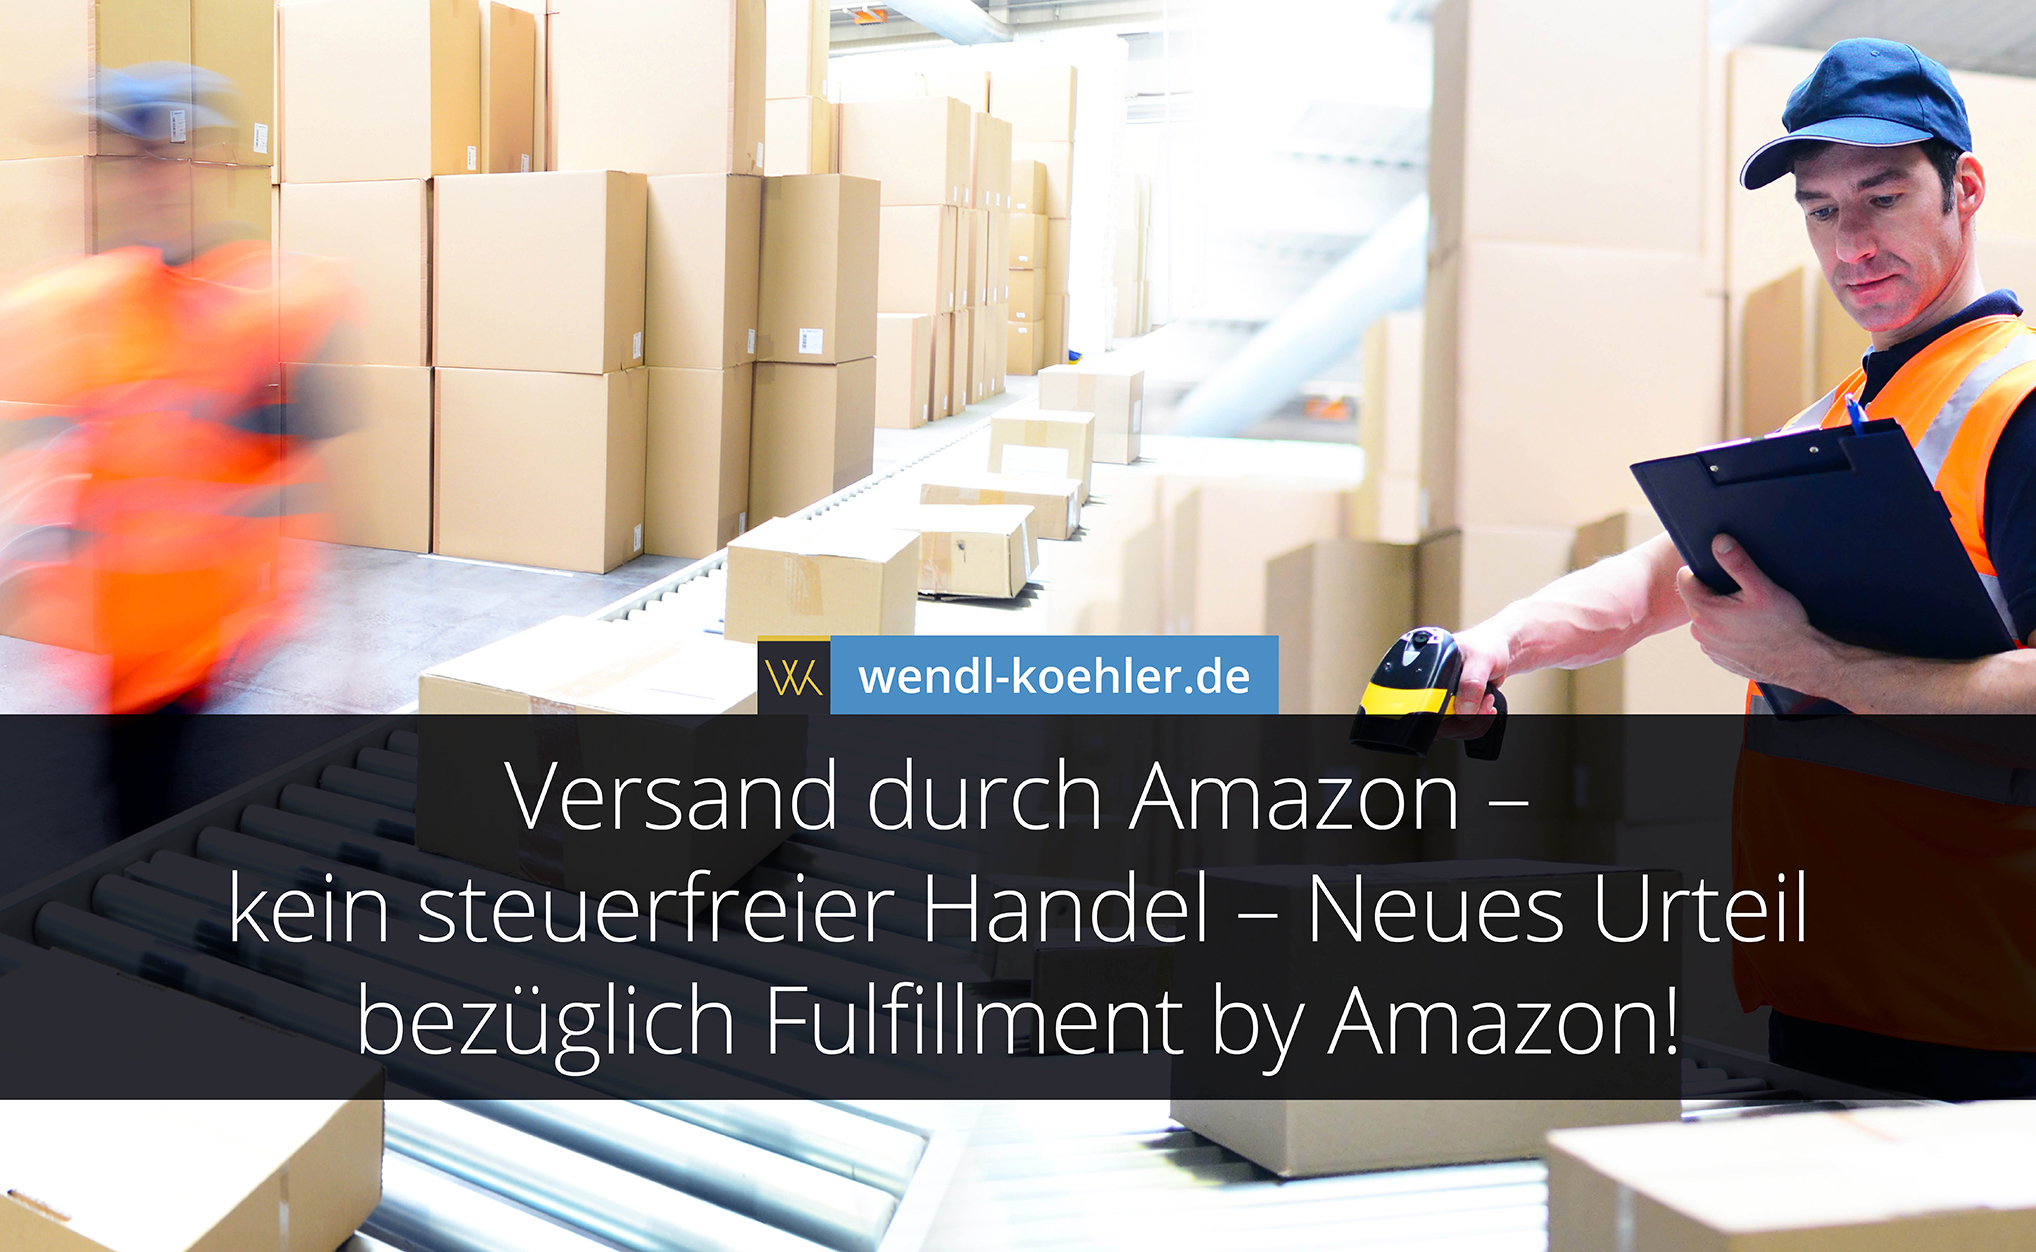 Versand durch Amazon – kein steuerfreier Handel – Neues Urteil bezüglich Fulfillment by Amazon!